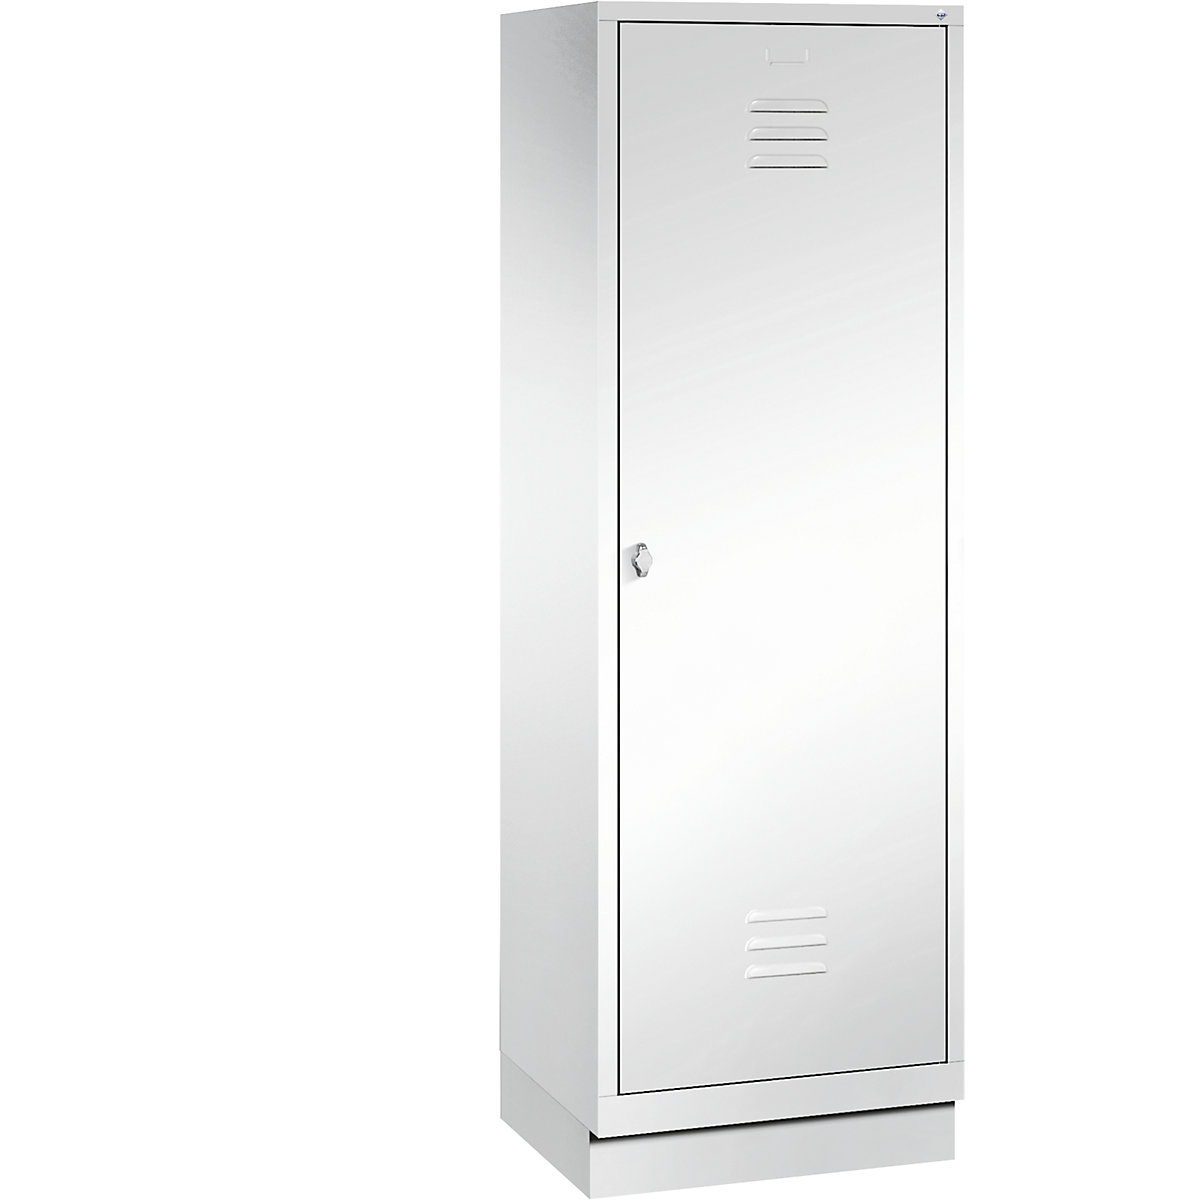 CLASSIC Garderobenschrank mit Sockel, Tür über 2 Abteile C+P, 2 Abteile, Abteilbreite 300 mm, verkehrsweiß-7